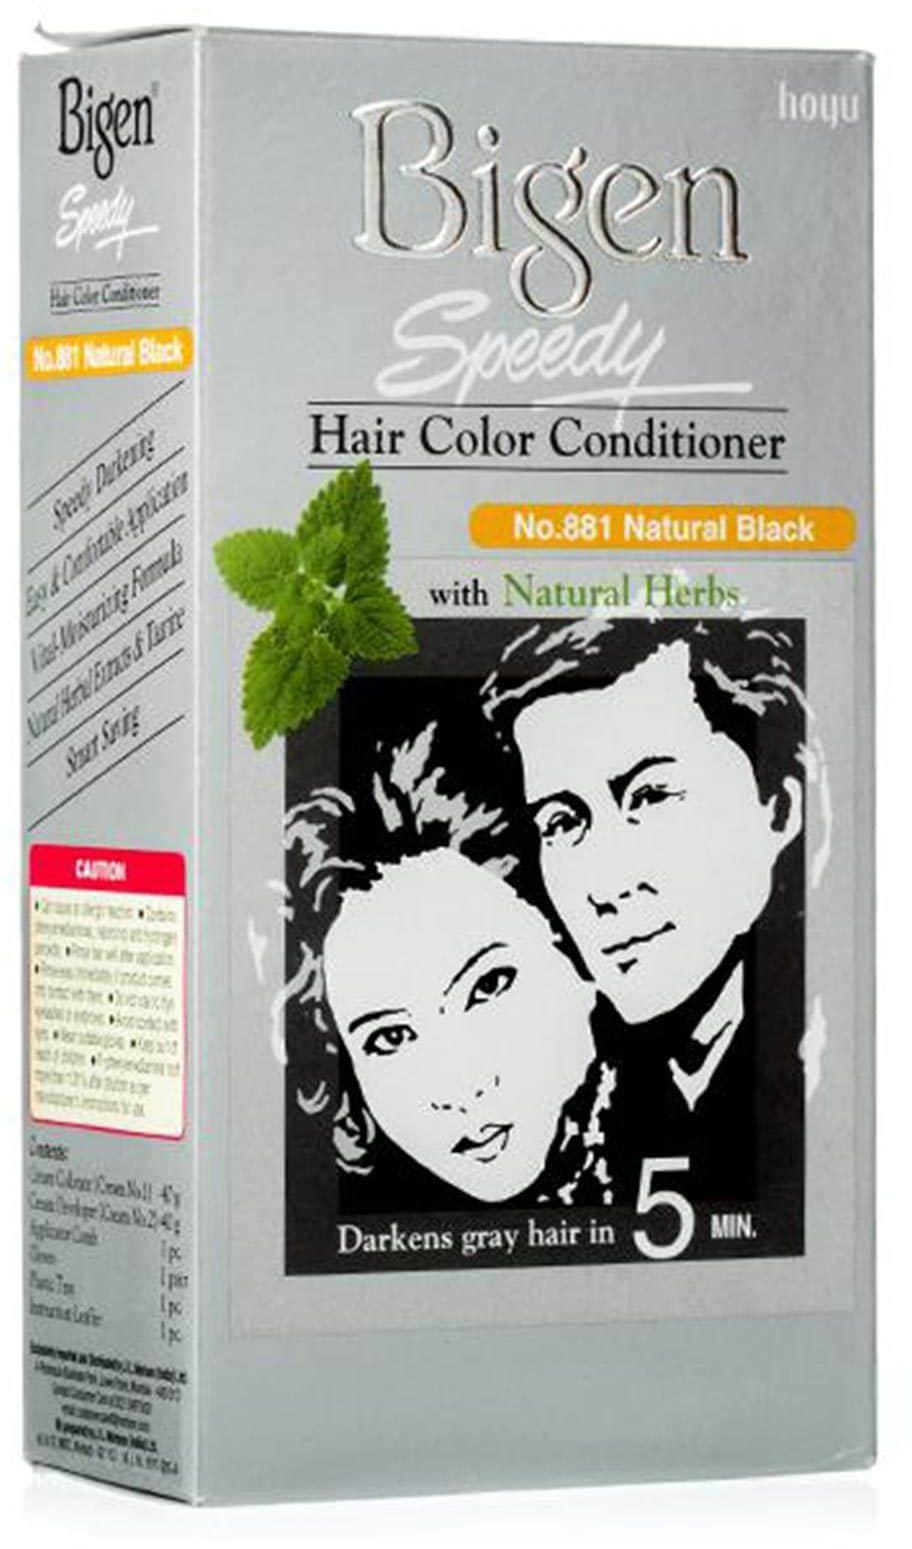 بيجين معالج لون شعر سريع مع الأعشاب الطبيعية رقم 881 أسود طبيعي 80 جرام